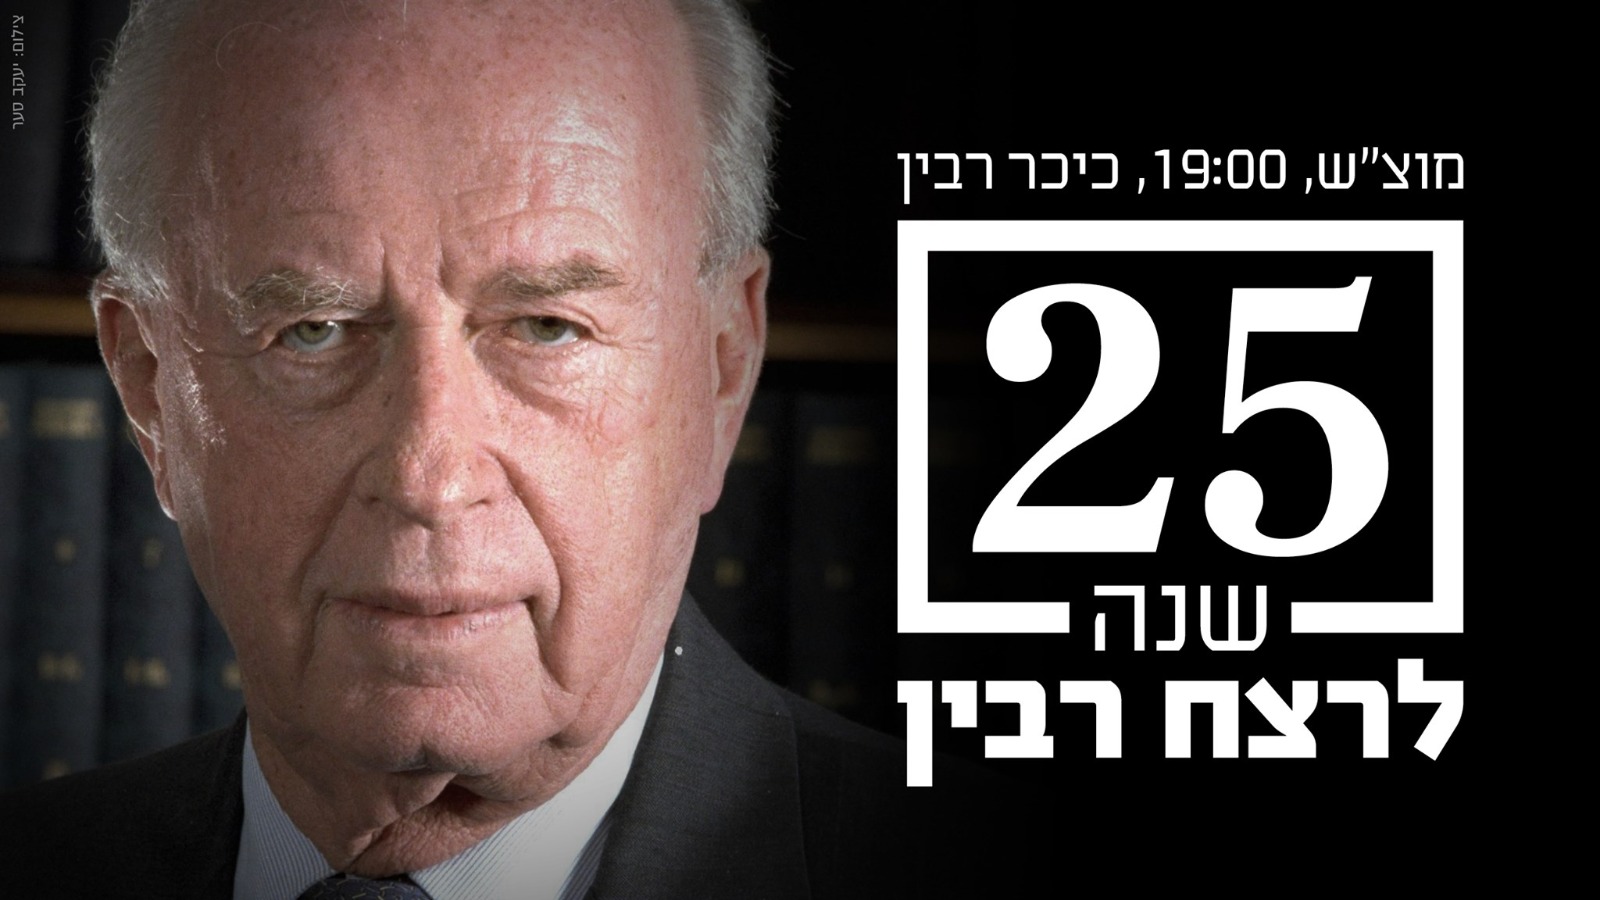 העצרת בכיכר לציון 25 שנה לרצח יצחק רבין - לא שוכחים, לא אדישים ולא שותקים!